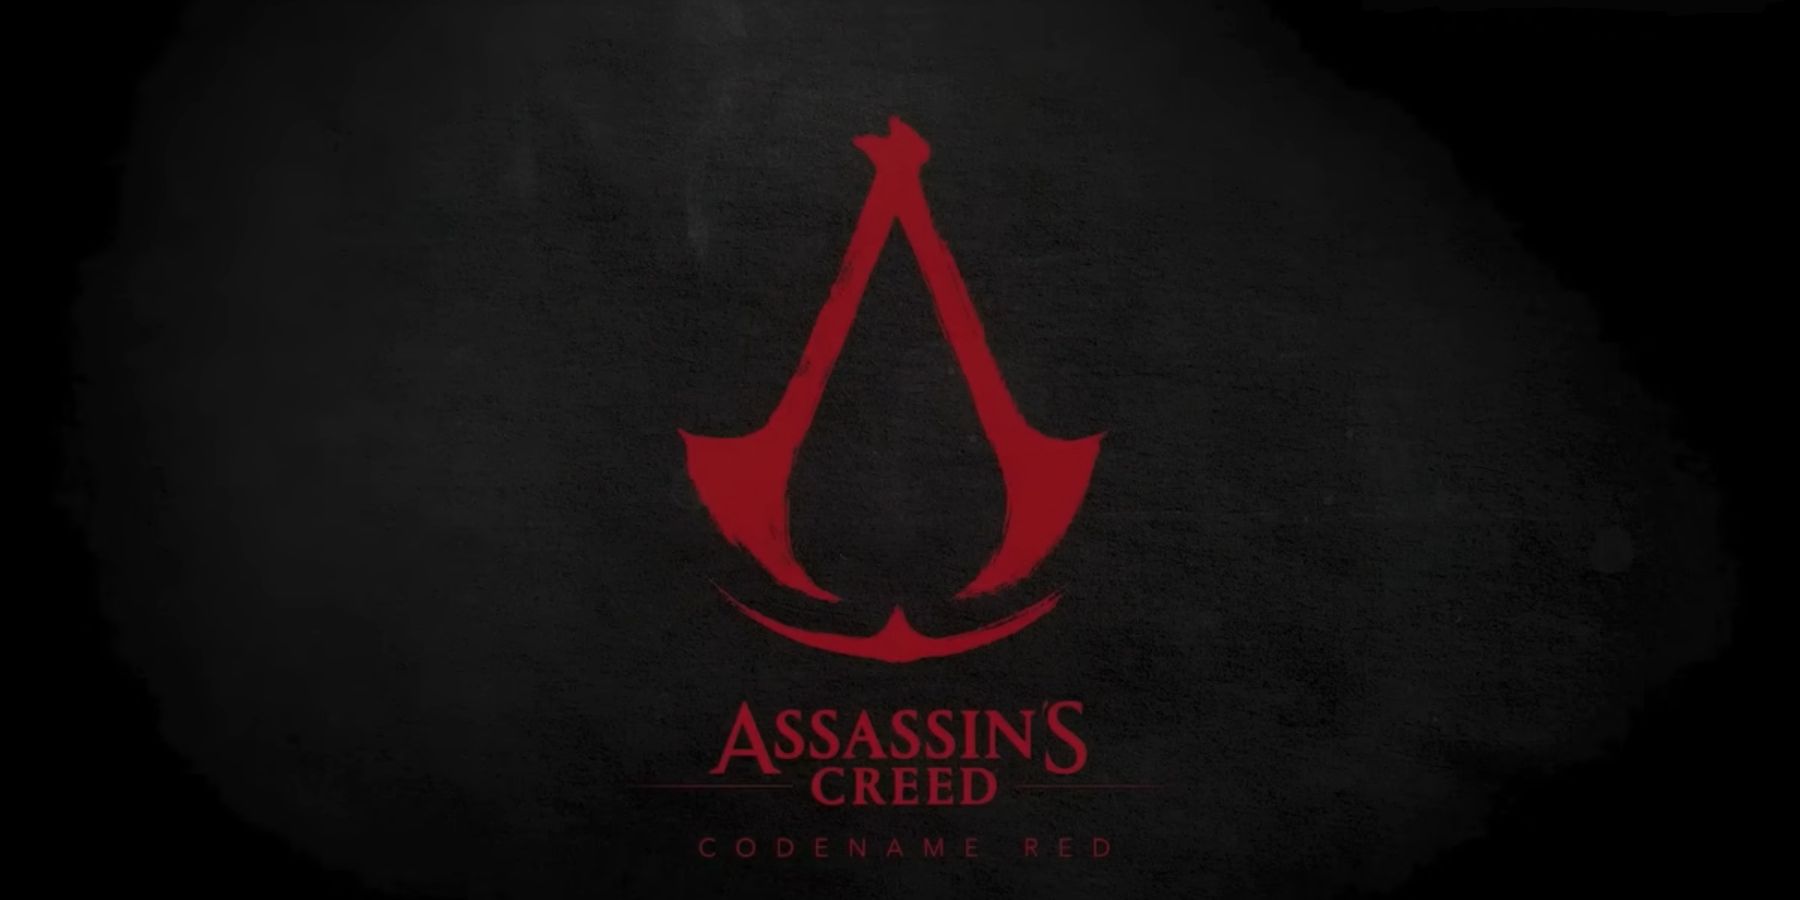 Ubisoft zaměstnanec tvrdí, že vývojáři opustili společnost kvůli Assassin’s Creed Red Director